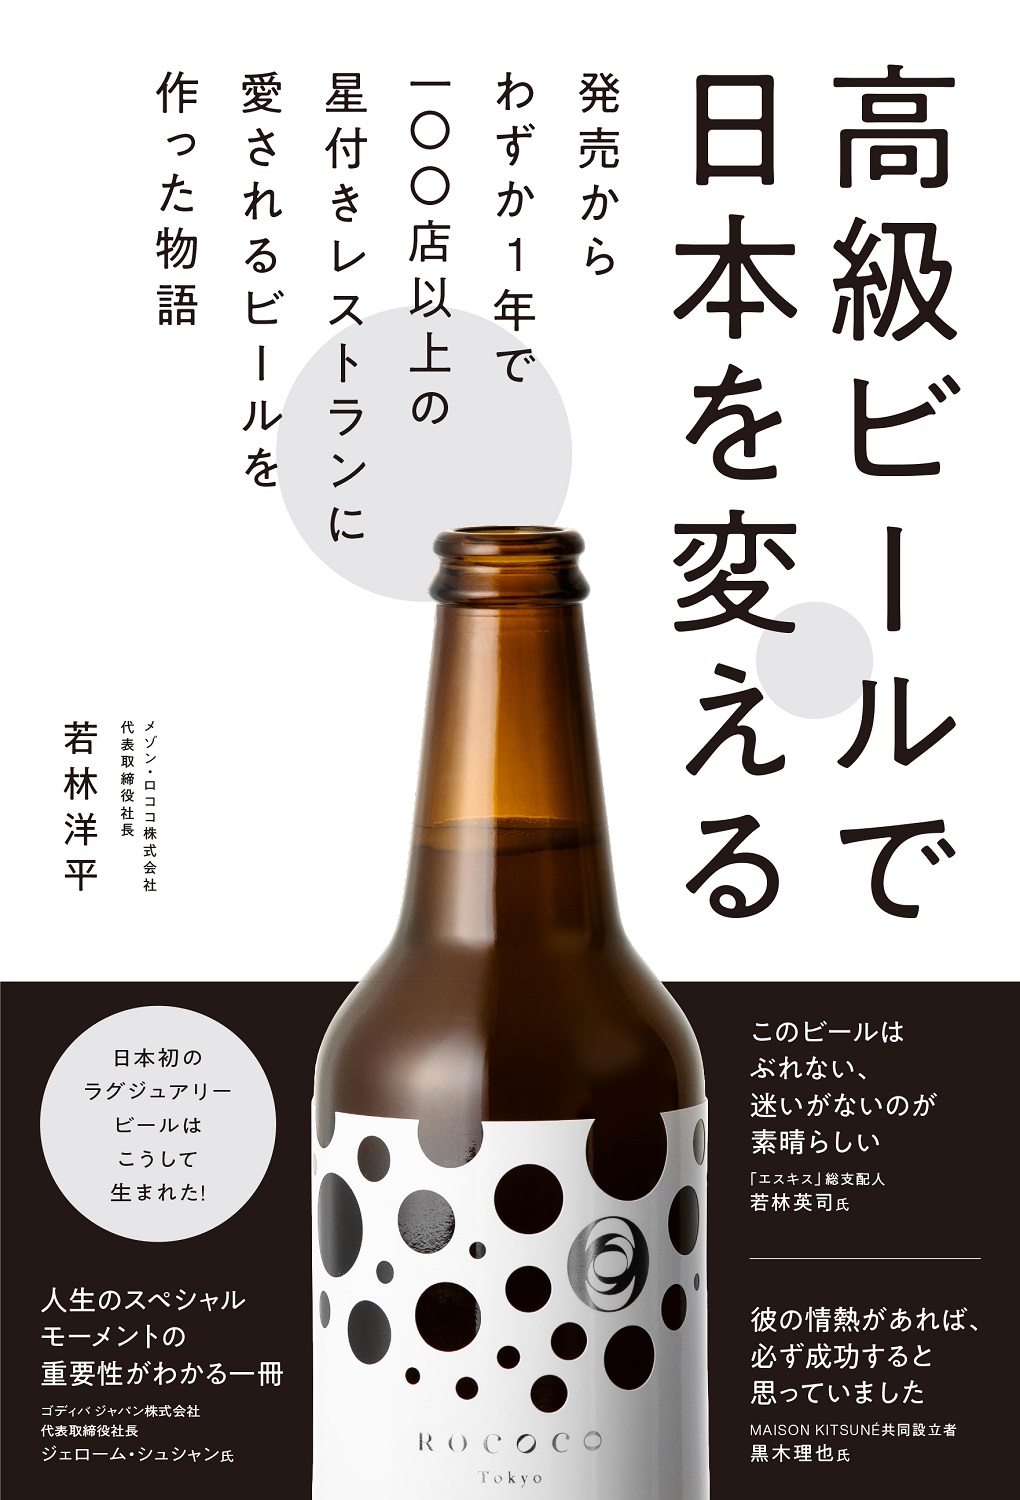 一度は飲みたい特別なビール と話題沸騰中 Rococotokyowhite 書籍 高級ビールで日本を変える 発売決定 予約開始 日本初のラグジュアリービール誕生ヒストリー ぴあ株式会社のプレスリリース